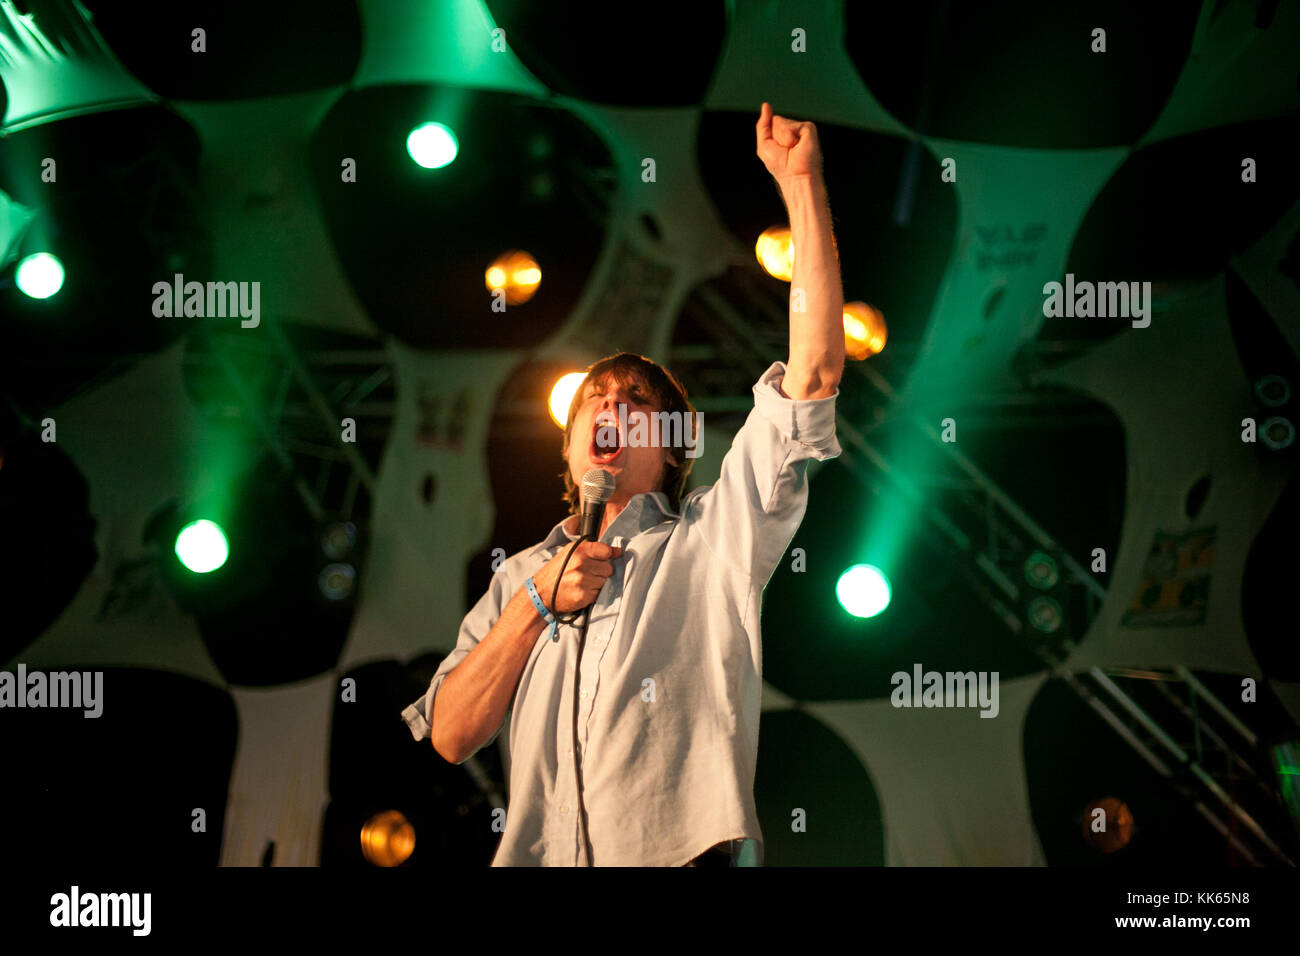 Le chanteur, musicien et compositeur John Maus effectue un concert live au festival de musique norvégienne Øyafestivalen 2012. John Maus est également connu comme le joueur de clavier pour Panda et Ariel Pink. La Norvège, 09/08 2012. Banque D'Images